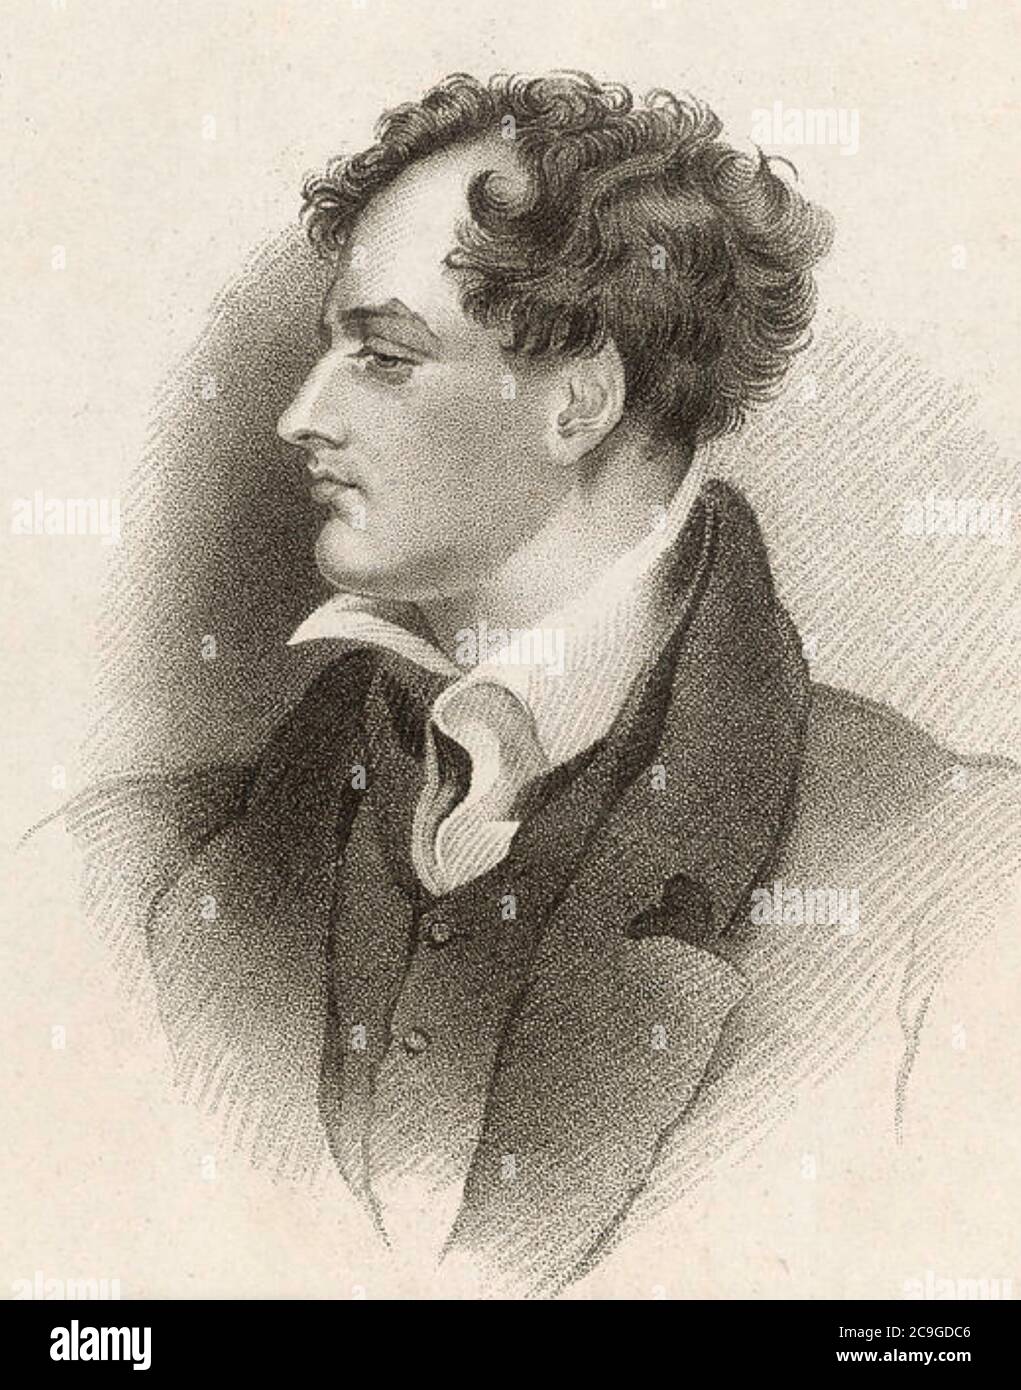 GEORGE GORDON BYRON, Lord Byron (1788-1824) poète et politicien anglais, vers 1813. Banque D'Images